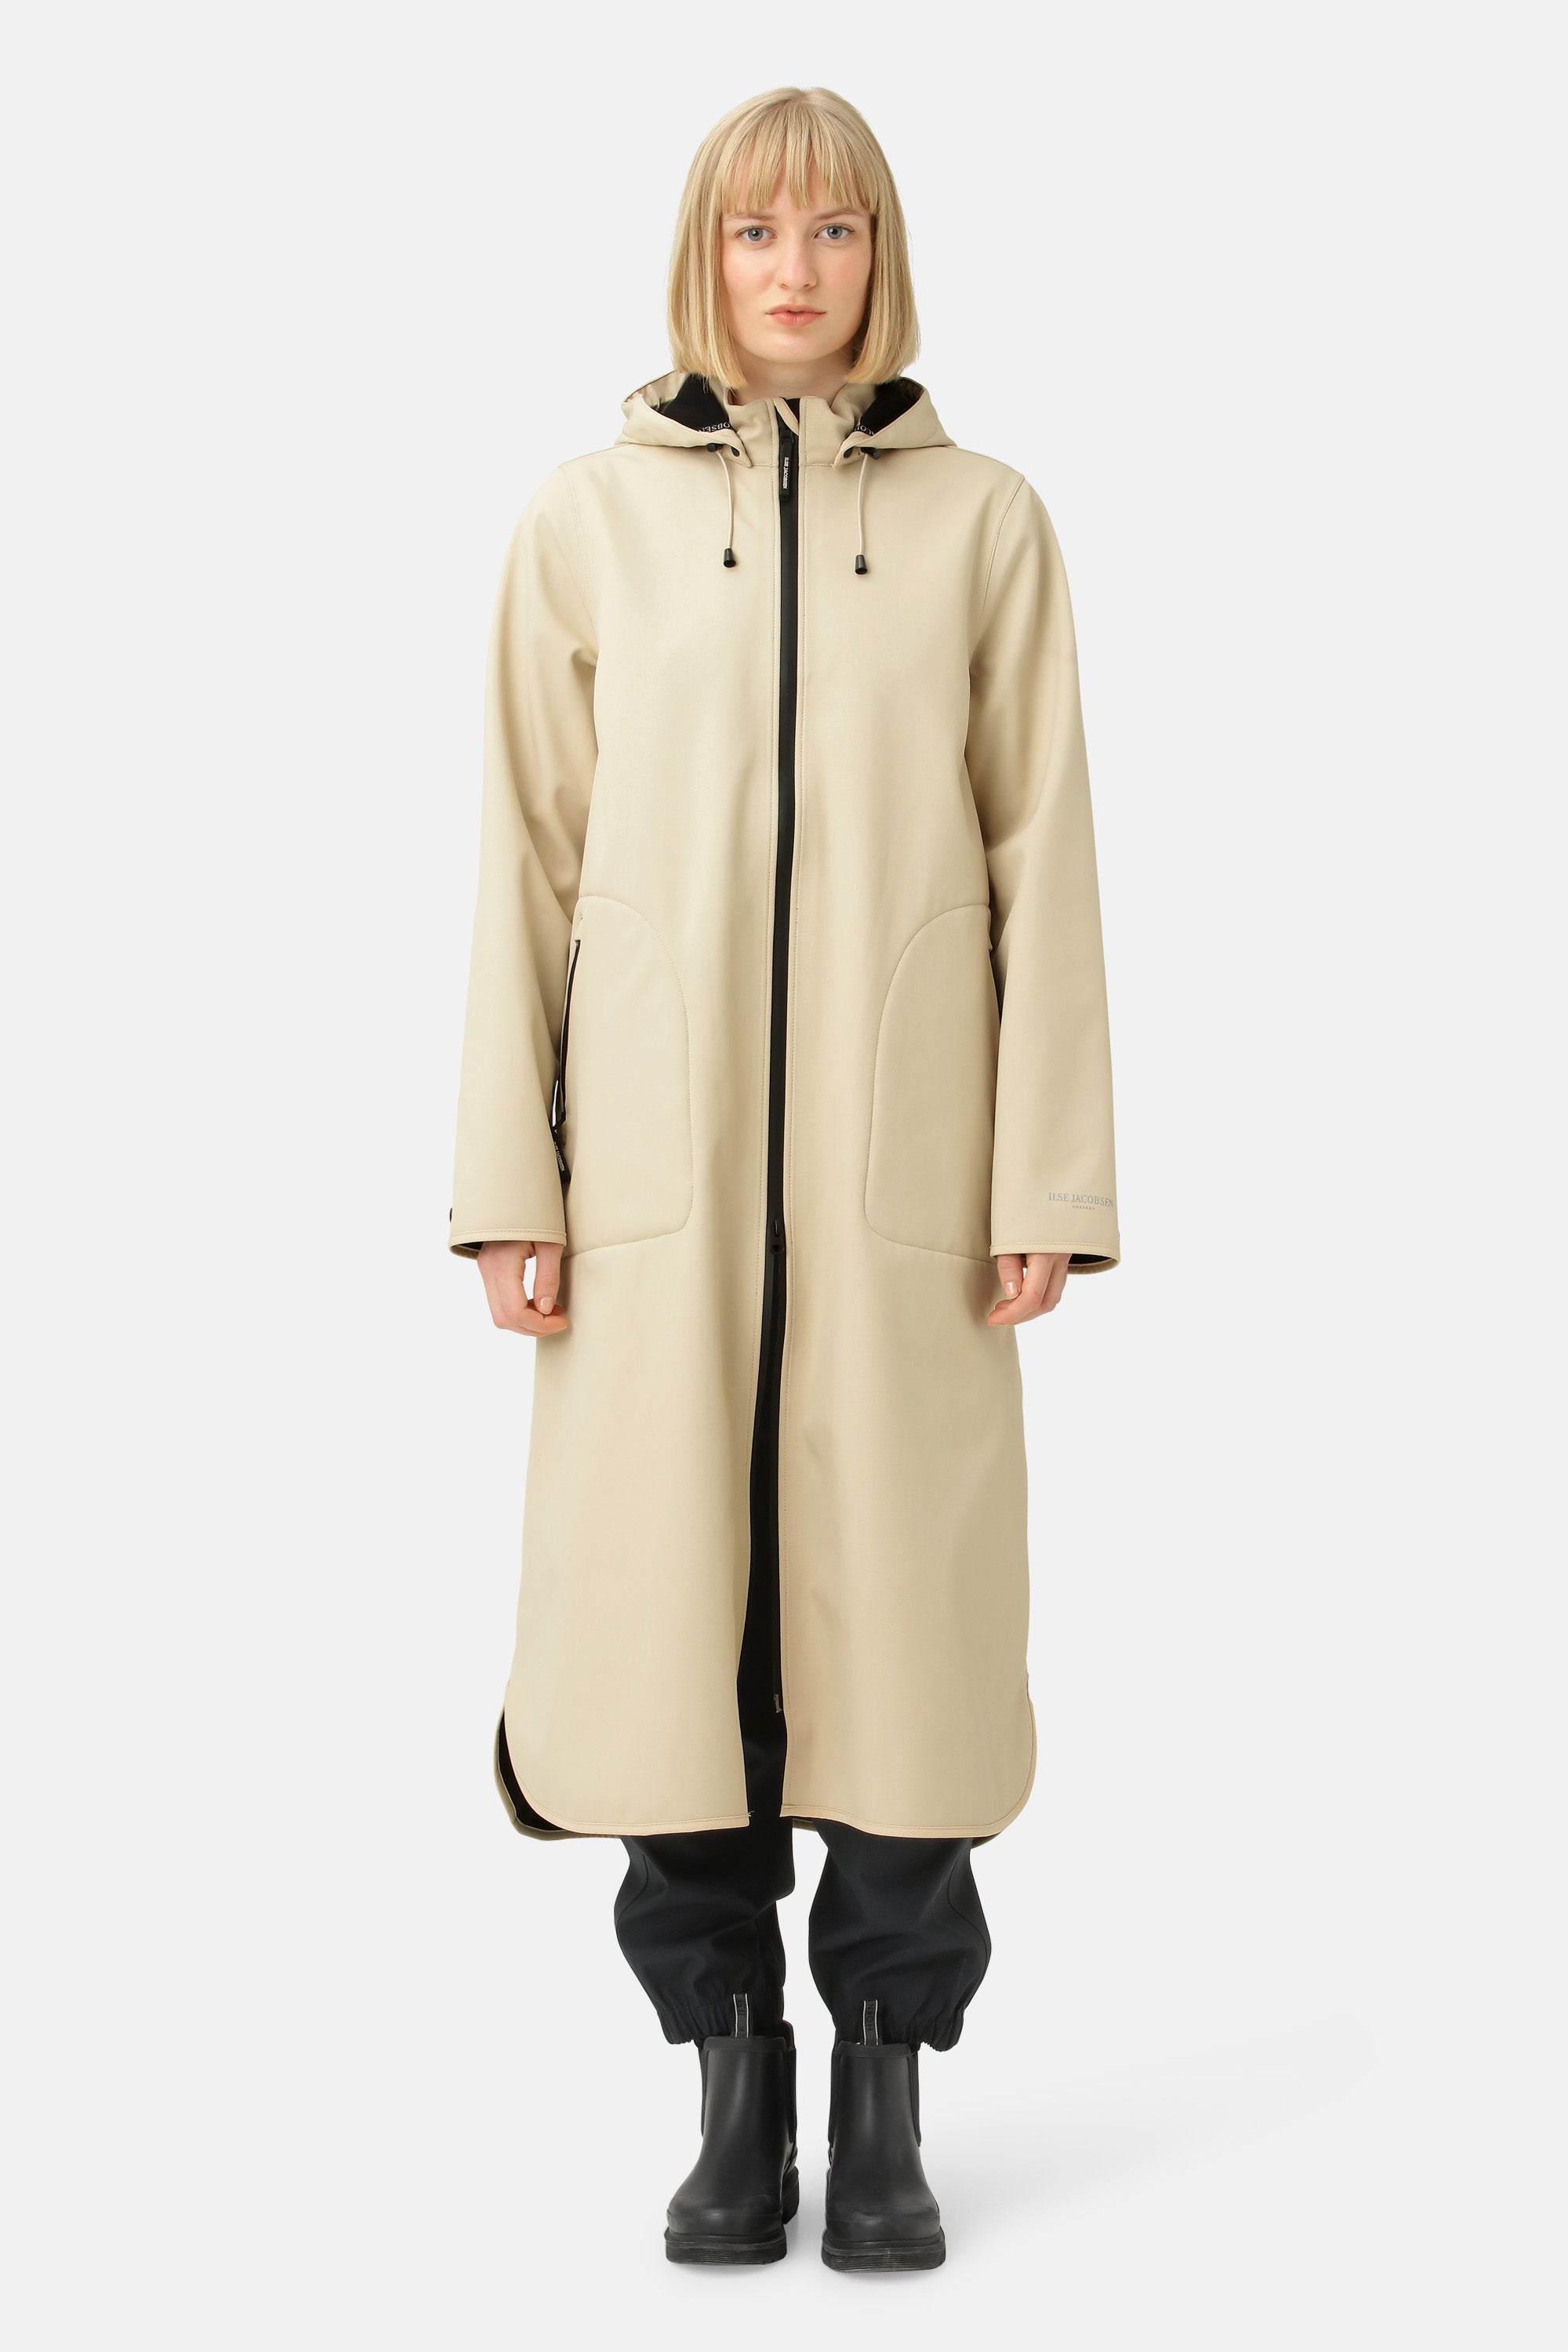 Stylish and waterproof Rain Jackets & Coats - ILSE JACOBSEN